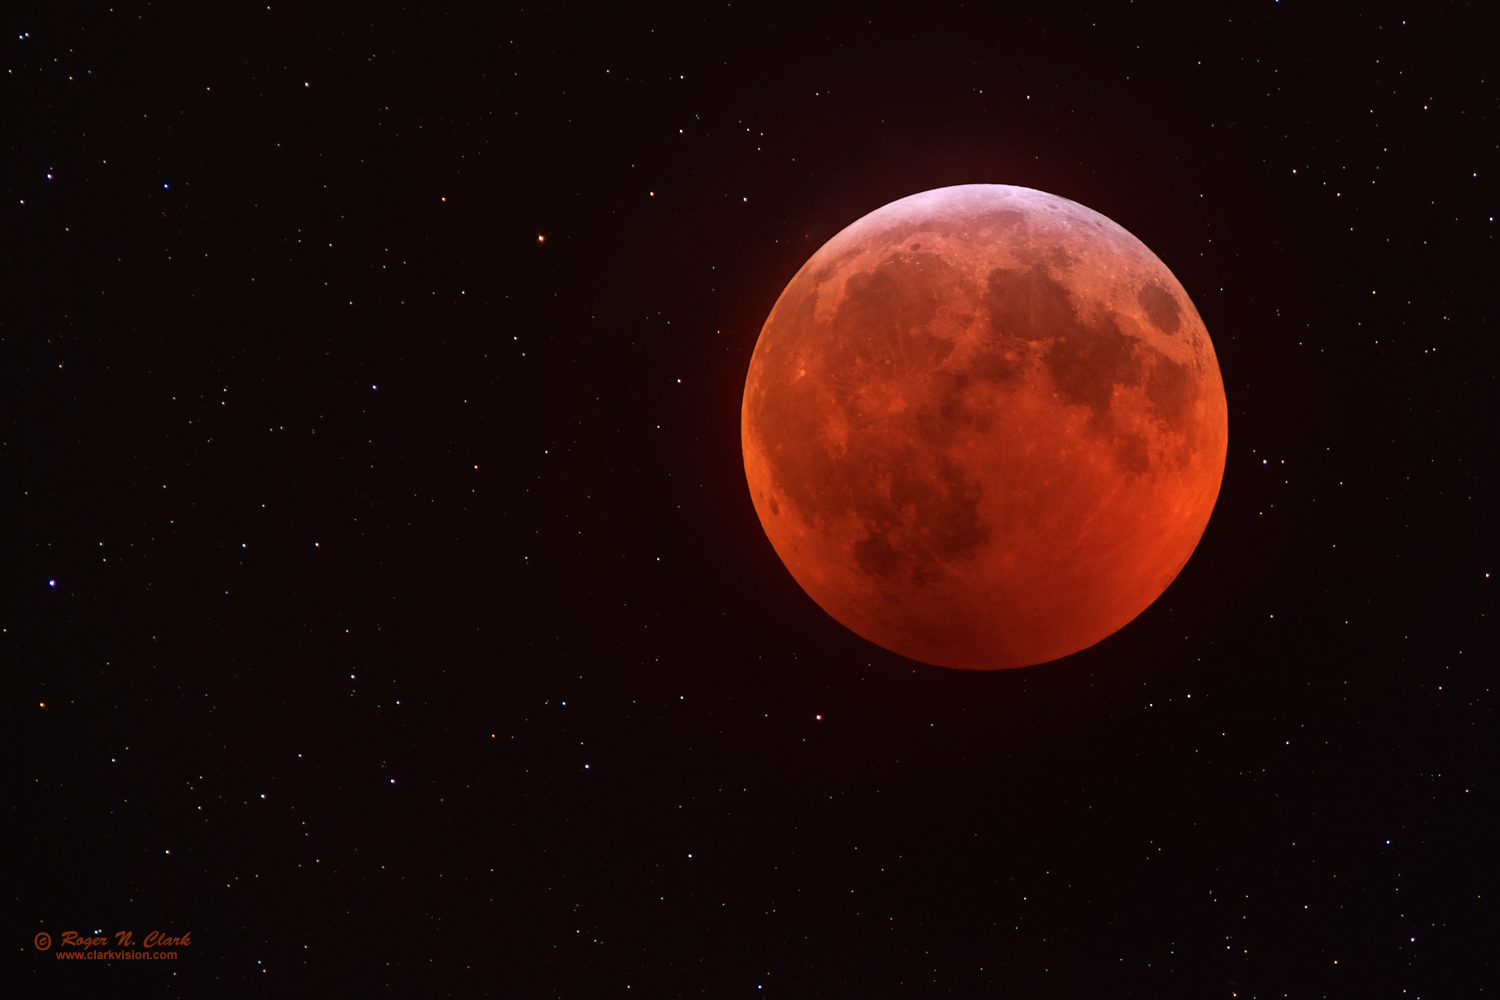 image lunar-eclipse-rnclark-420mm-c01-20-2019-av45.j-c1-0.5xs.jpg is Copyrighted by Roger N. Clark, www.clarkvision.com